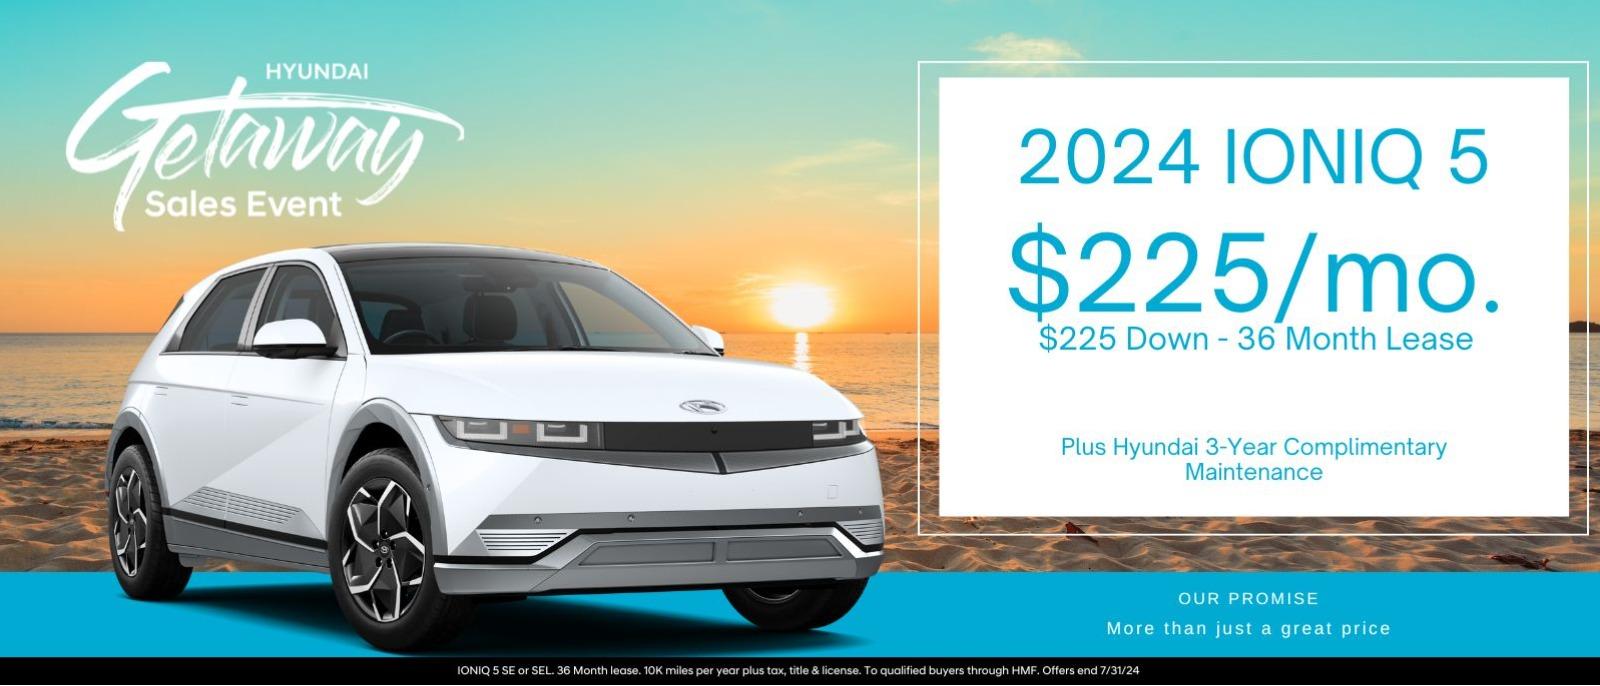 2024 Ioniq 5 
$225/mo. $225 Down - 36 month lease
Plus Hyundai 3- Year Complimentary Maintenance